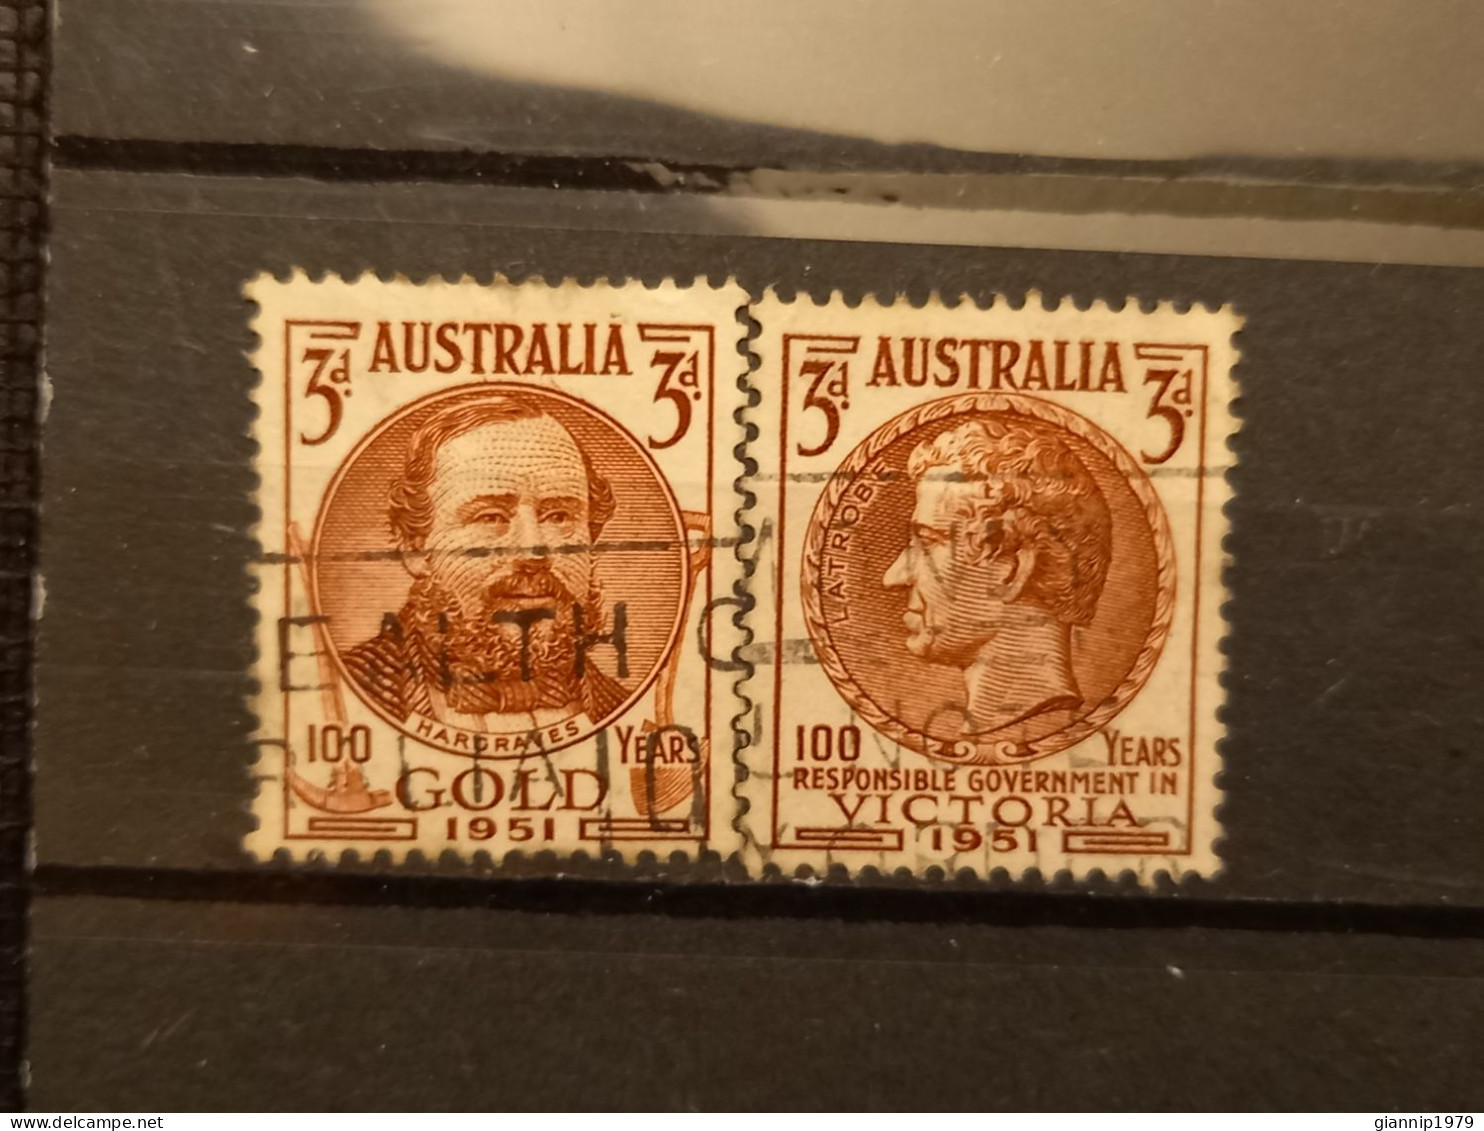 FRANCOBOLLI STAMPS AUSTRALIA AUSTRALIAN 1951 USED SERIE COMPLETE COMPLETA 100 ANNI ANNIVERSARY ORO VICTORIA OBLITERE' - Gebraucht